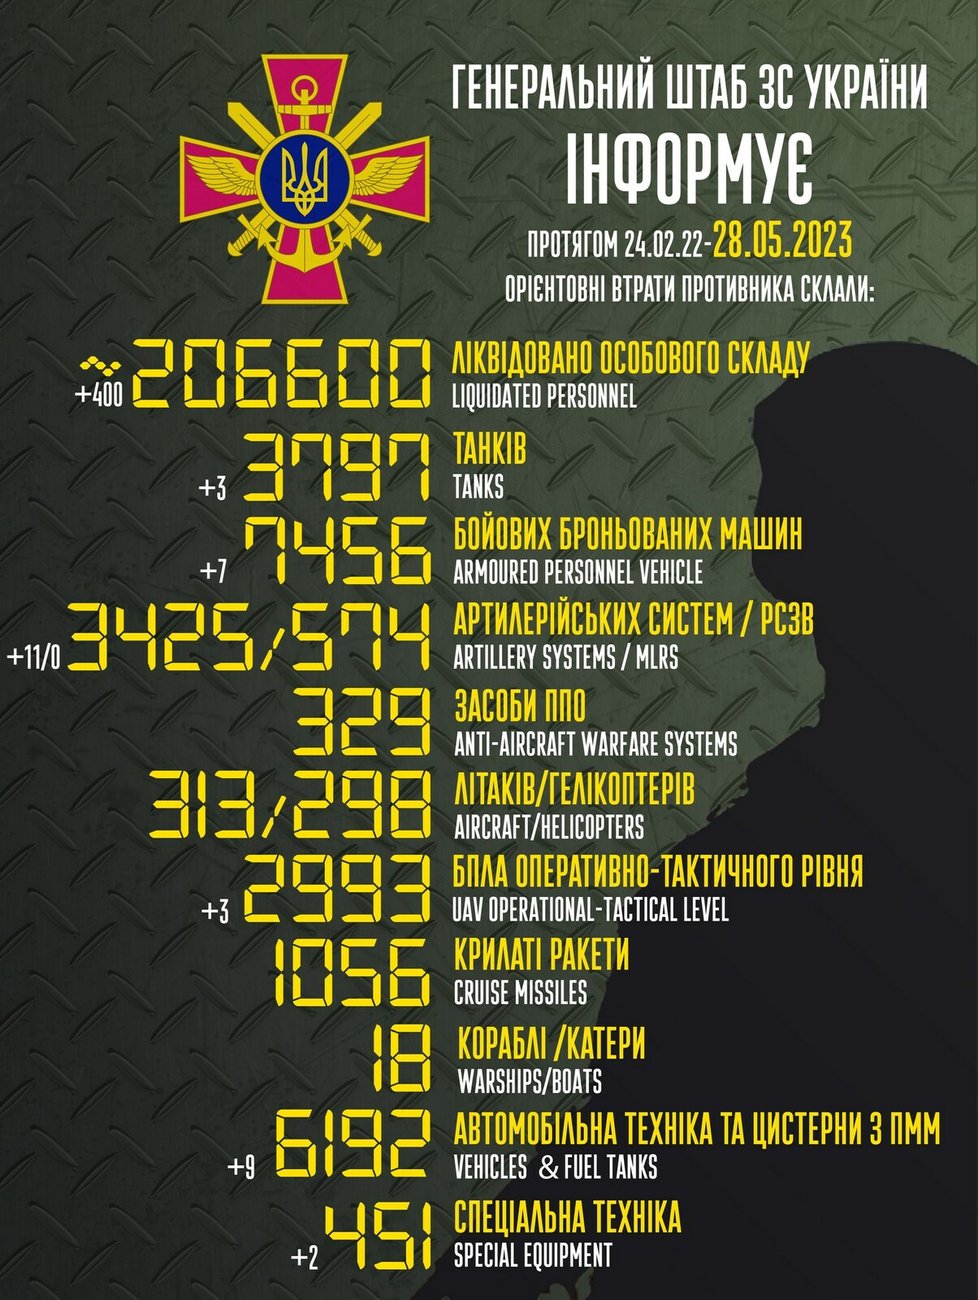 Ruské ztráty za poslední den podle reportu ukrajinského generálního štábu 28. 5. 2023.